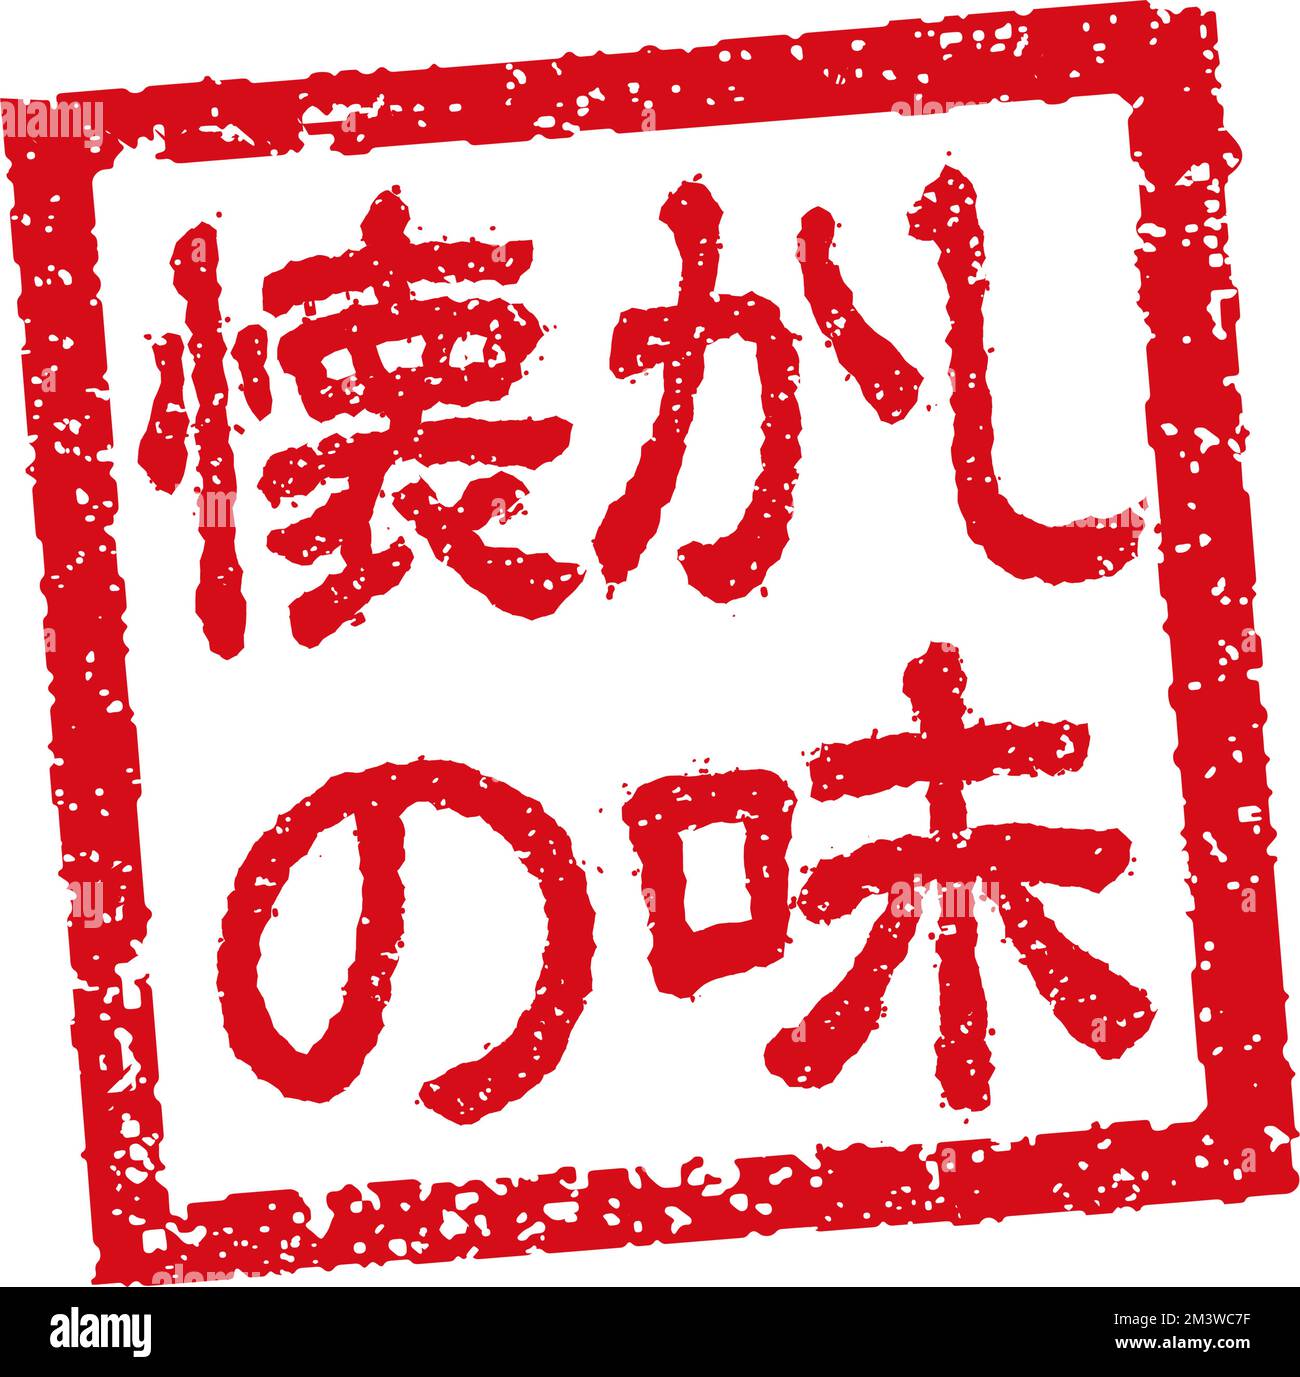 Abbildung von Gummistempeln, die häufig in japanischen Restaurants und Pubs verwendet wird. Usw. | nostalgischer Geschmack Stock Vektor